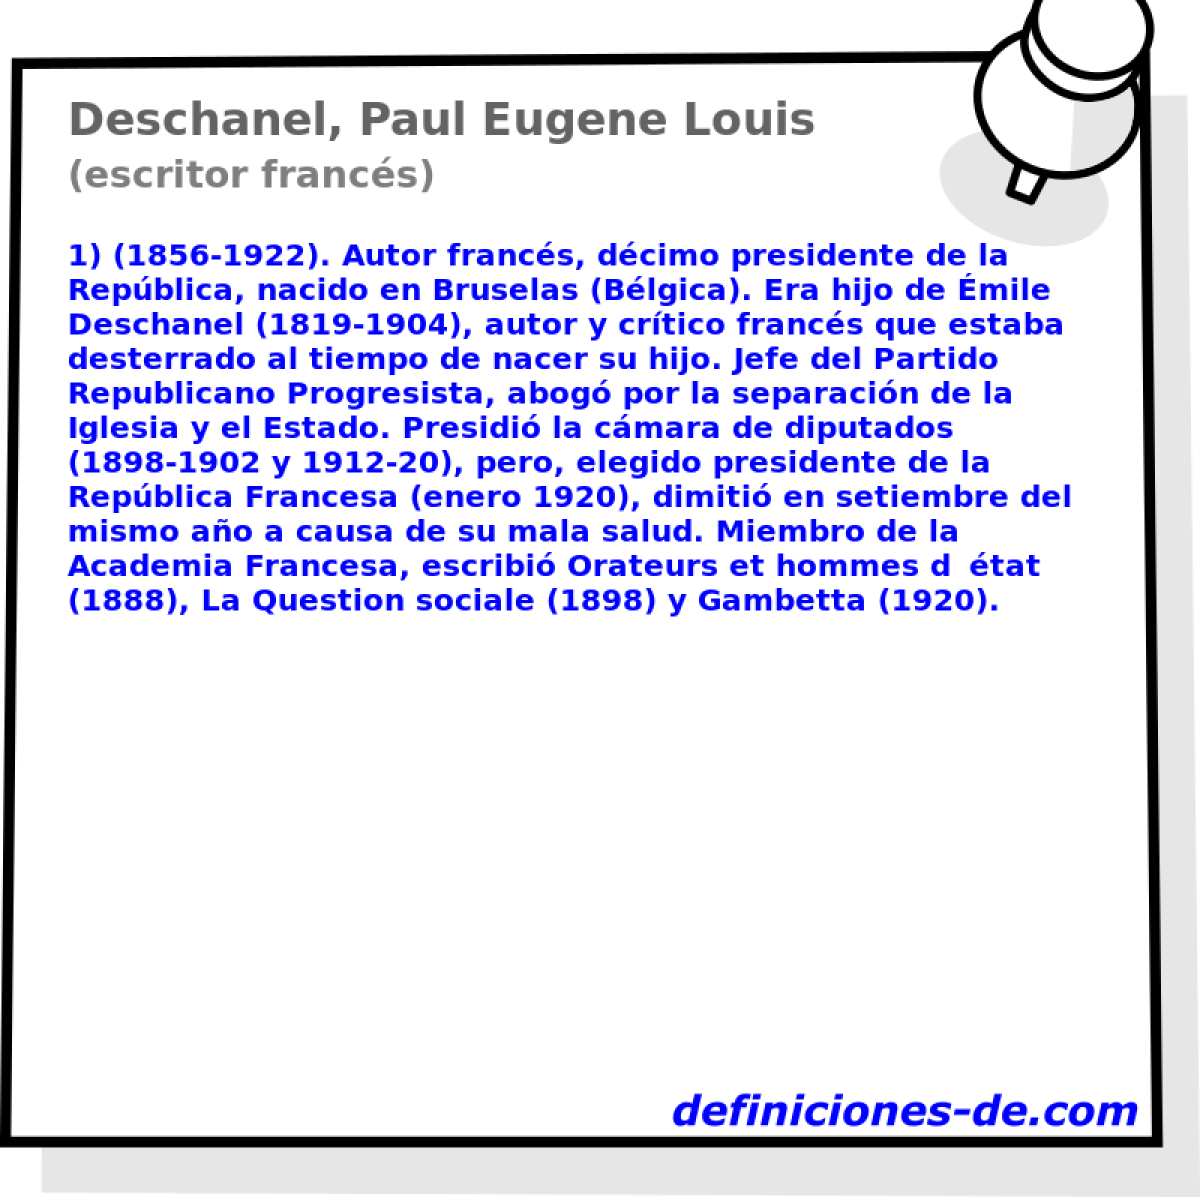 Deschanel, Paul Eugene Louis (escritor francs)